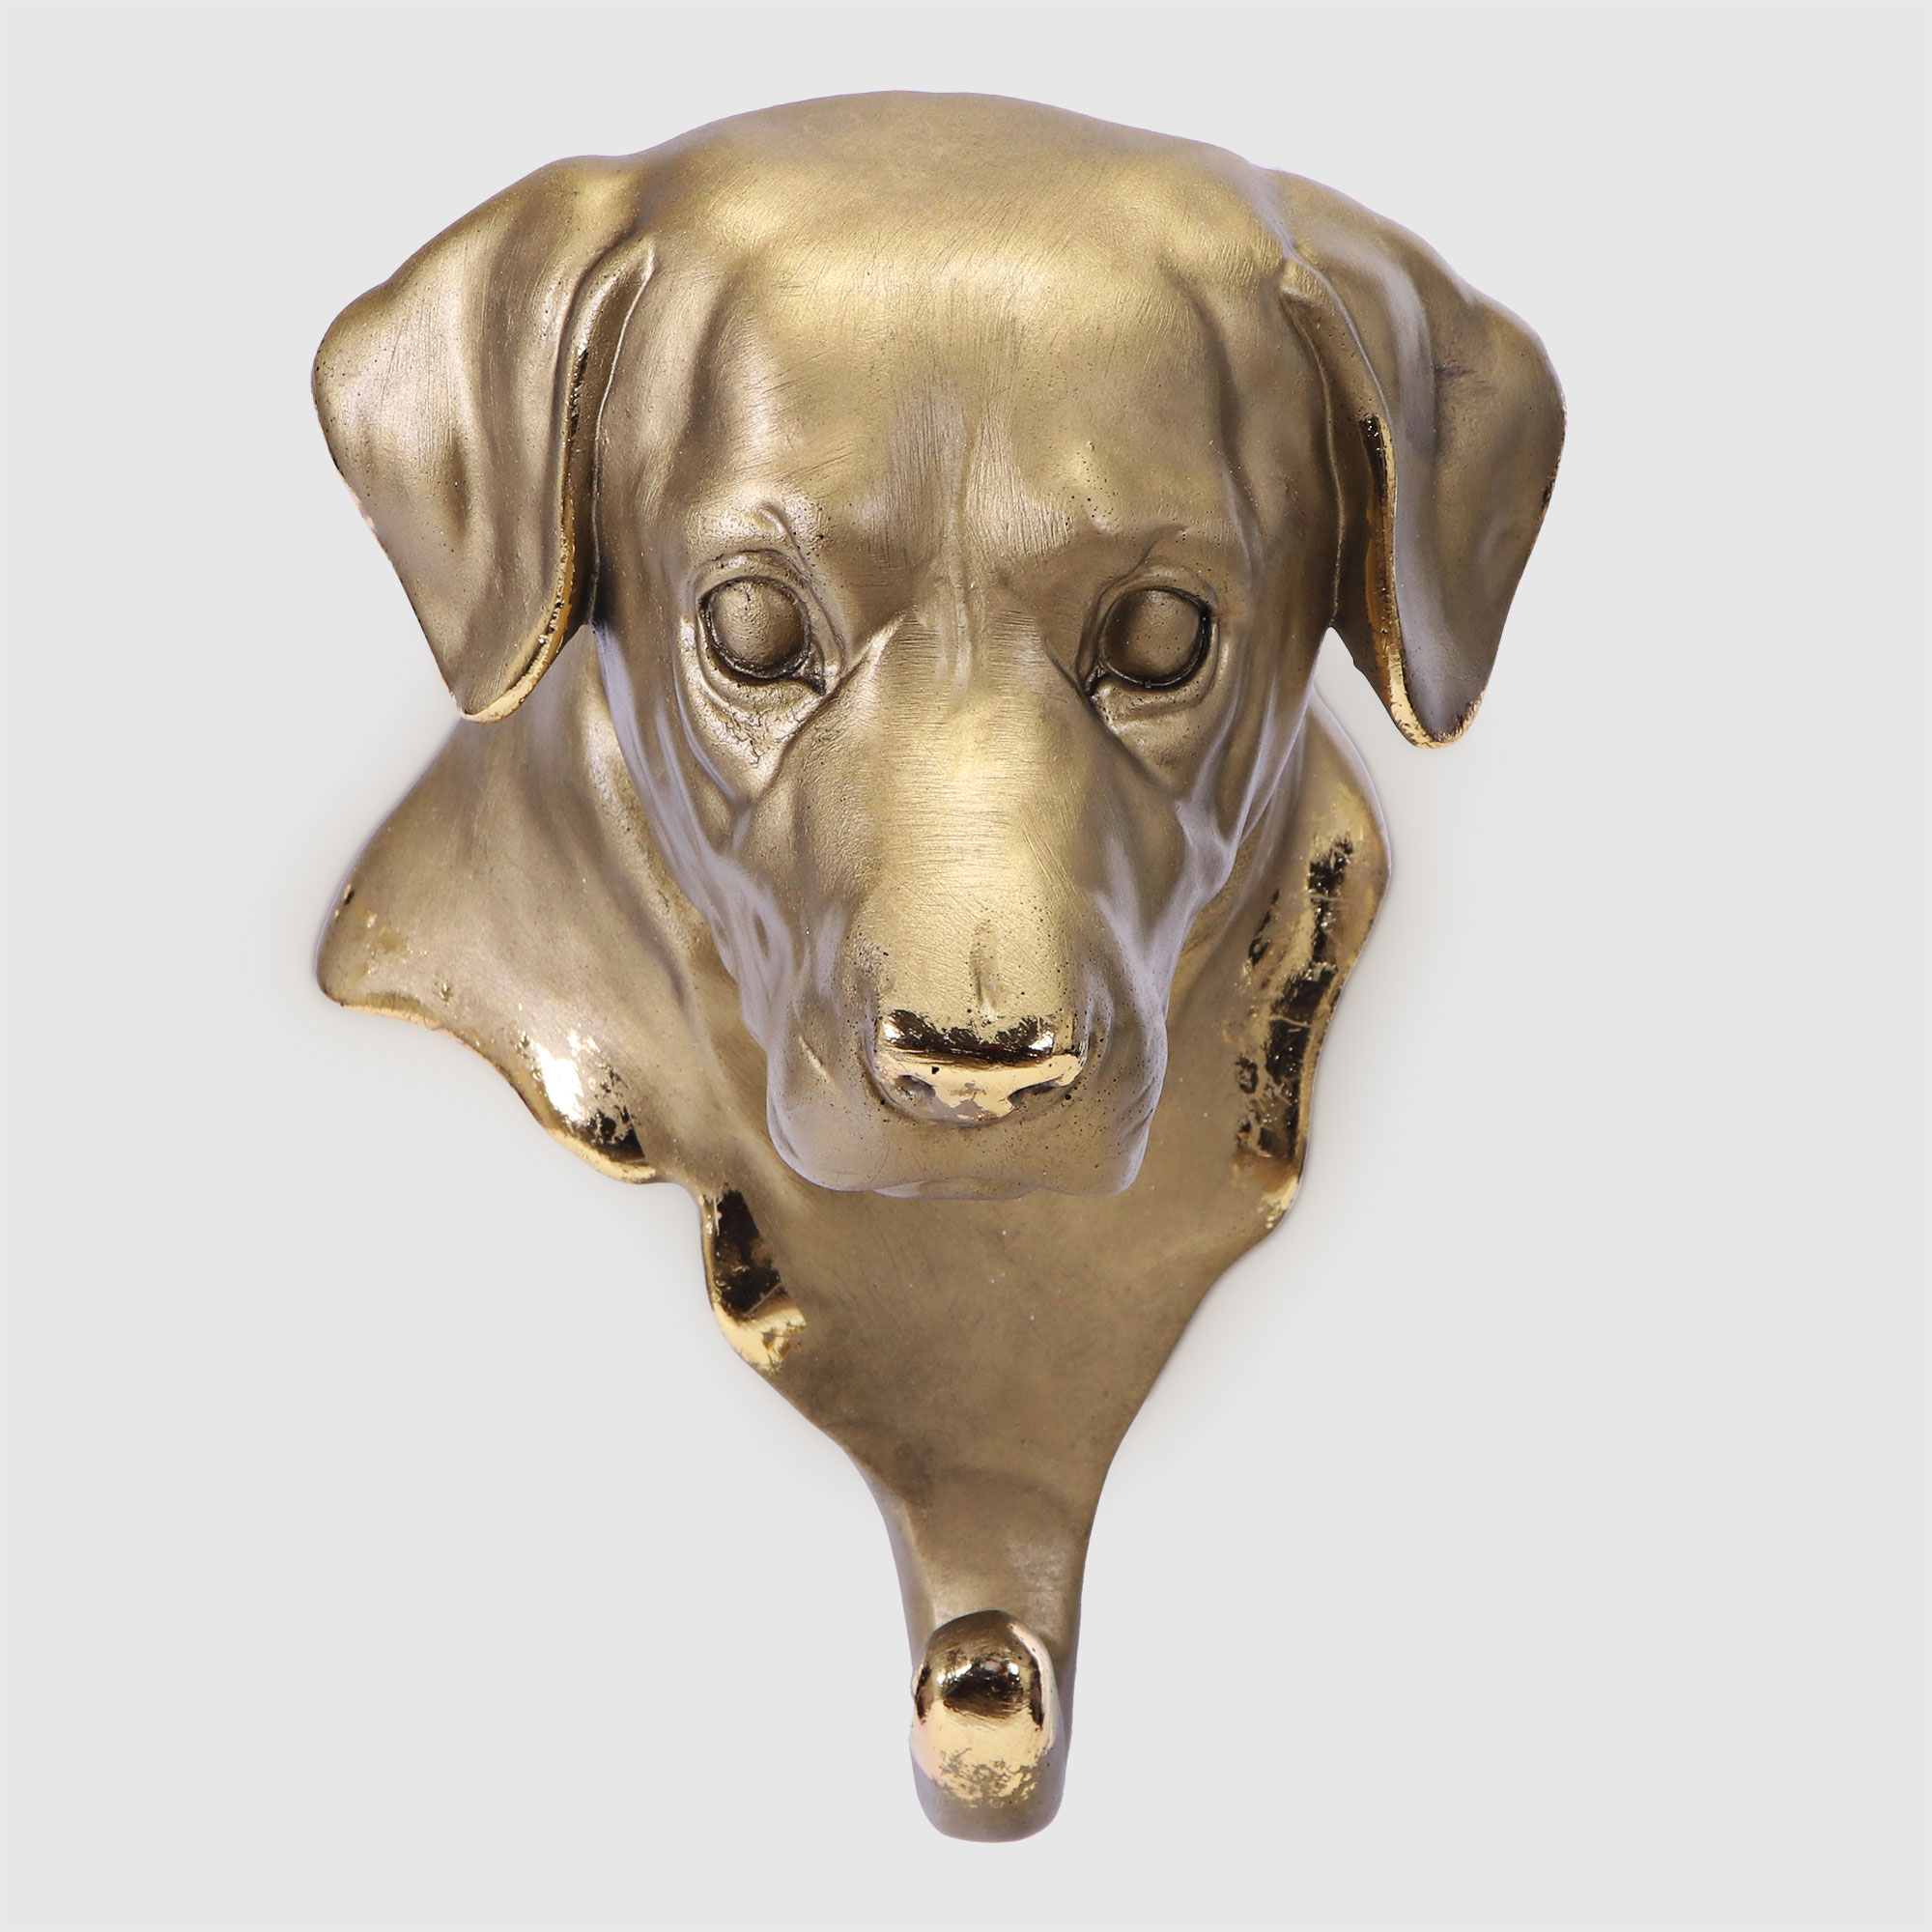 Вешалка настенная Тпк полиформ голова собаки бронзовая,высота 20 см вешалка настенная тпк полиформ голова барана высота 20 см